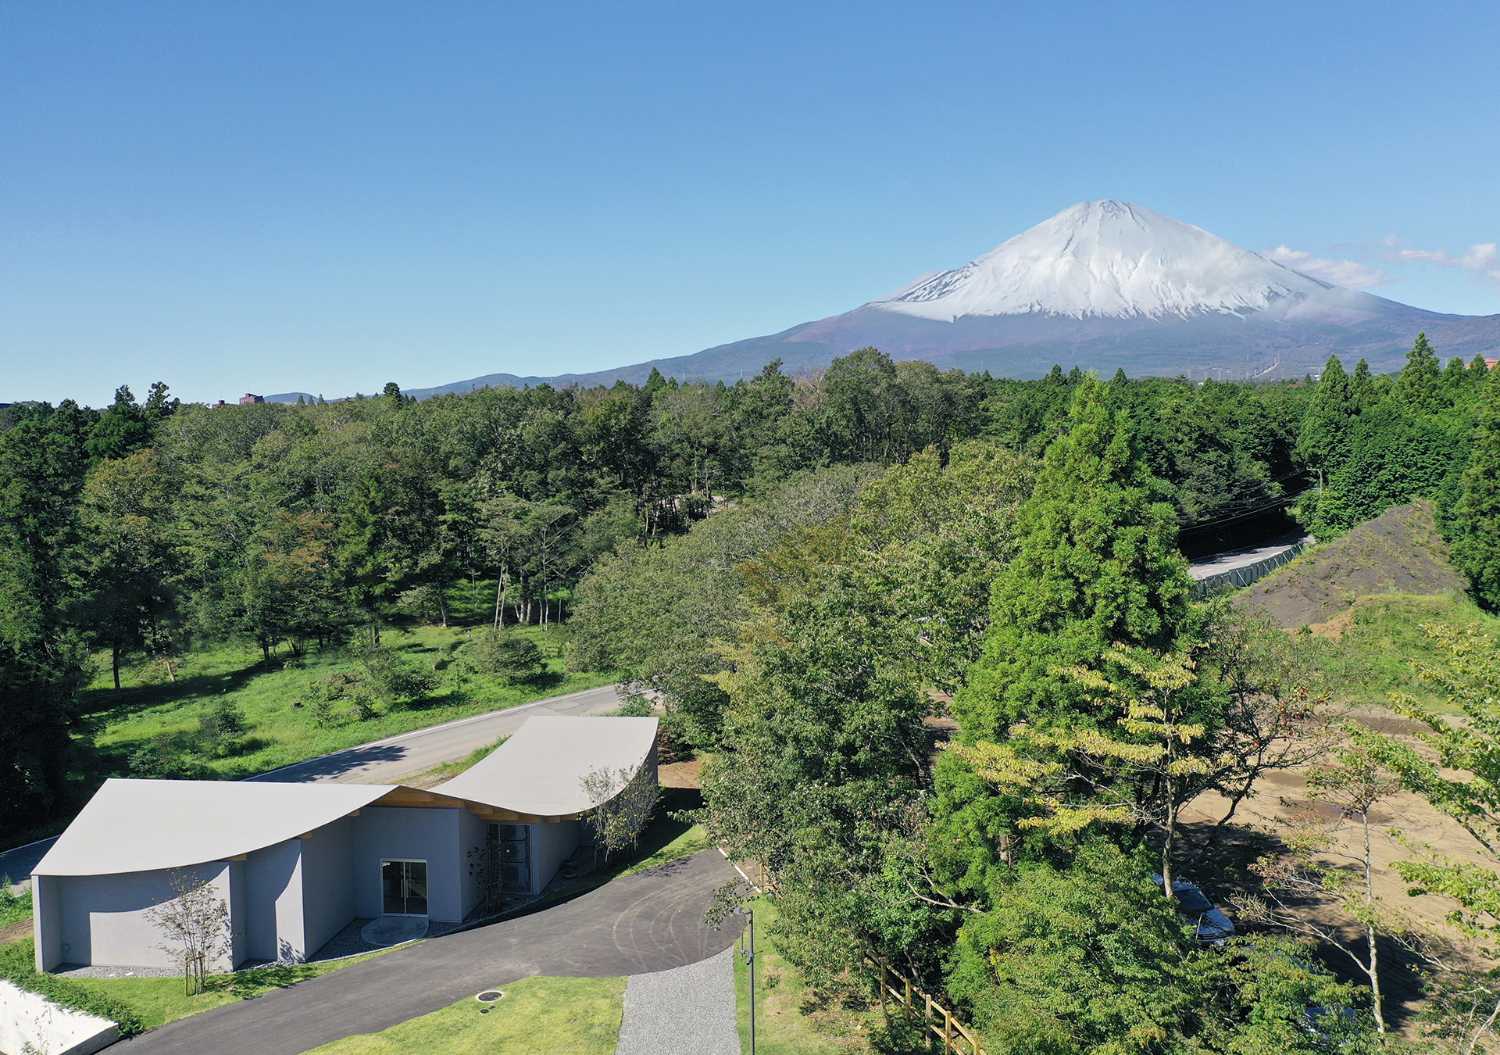 L’hotel adagiato ai piedi della collina che corre verso il Monte Fuji